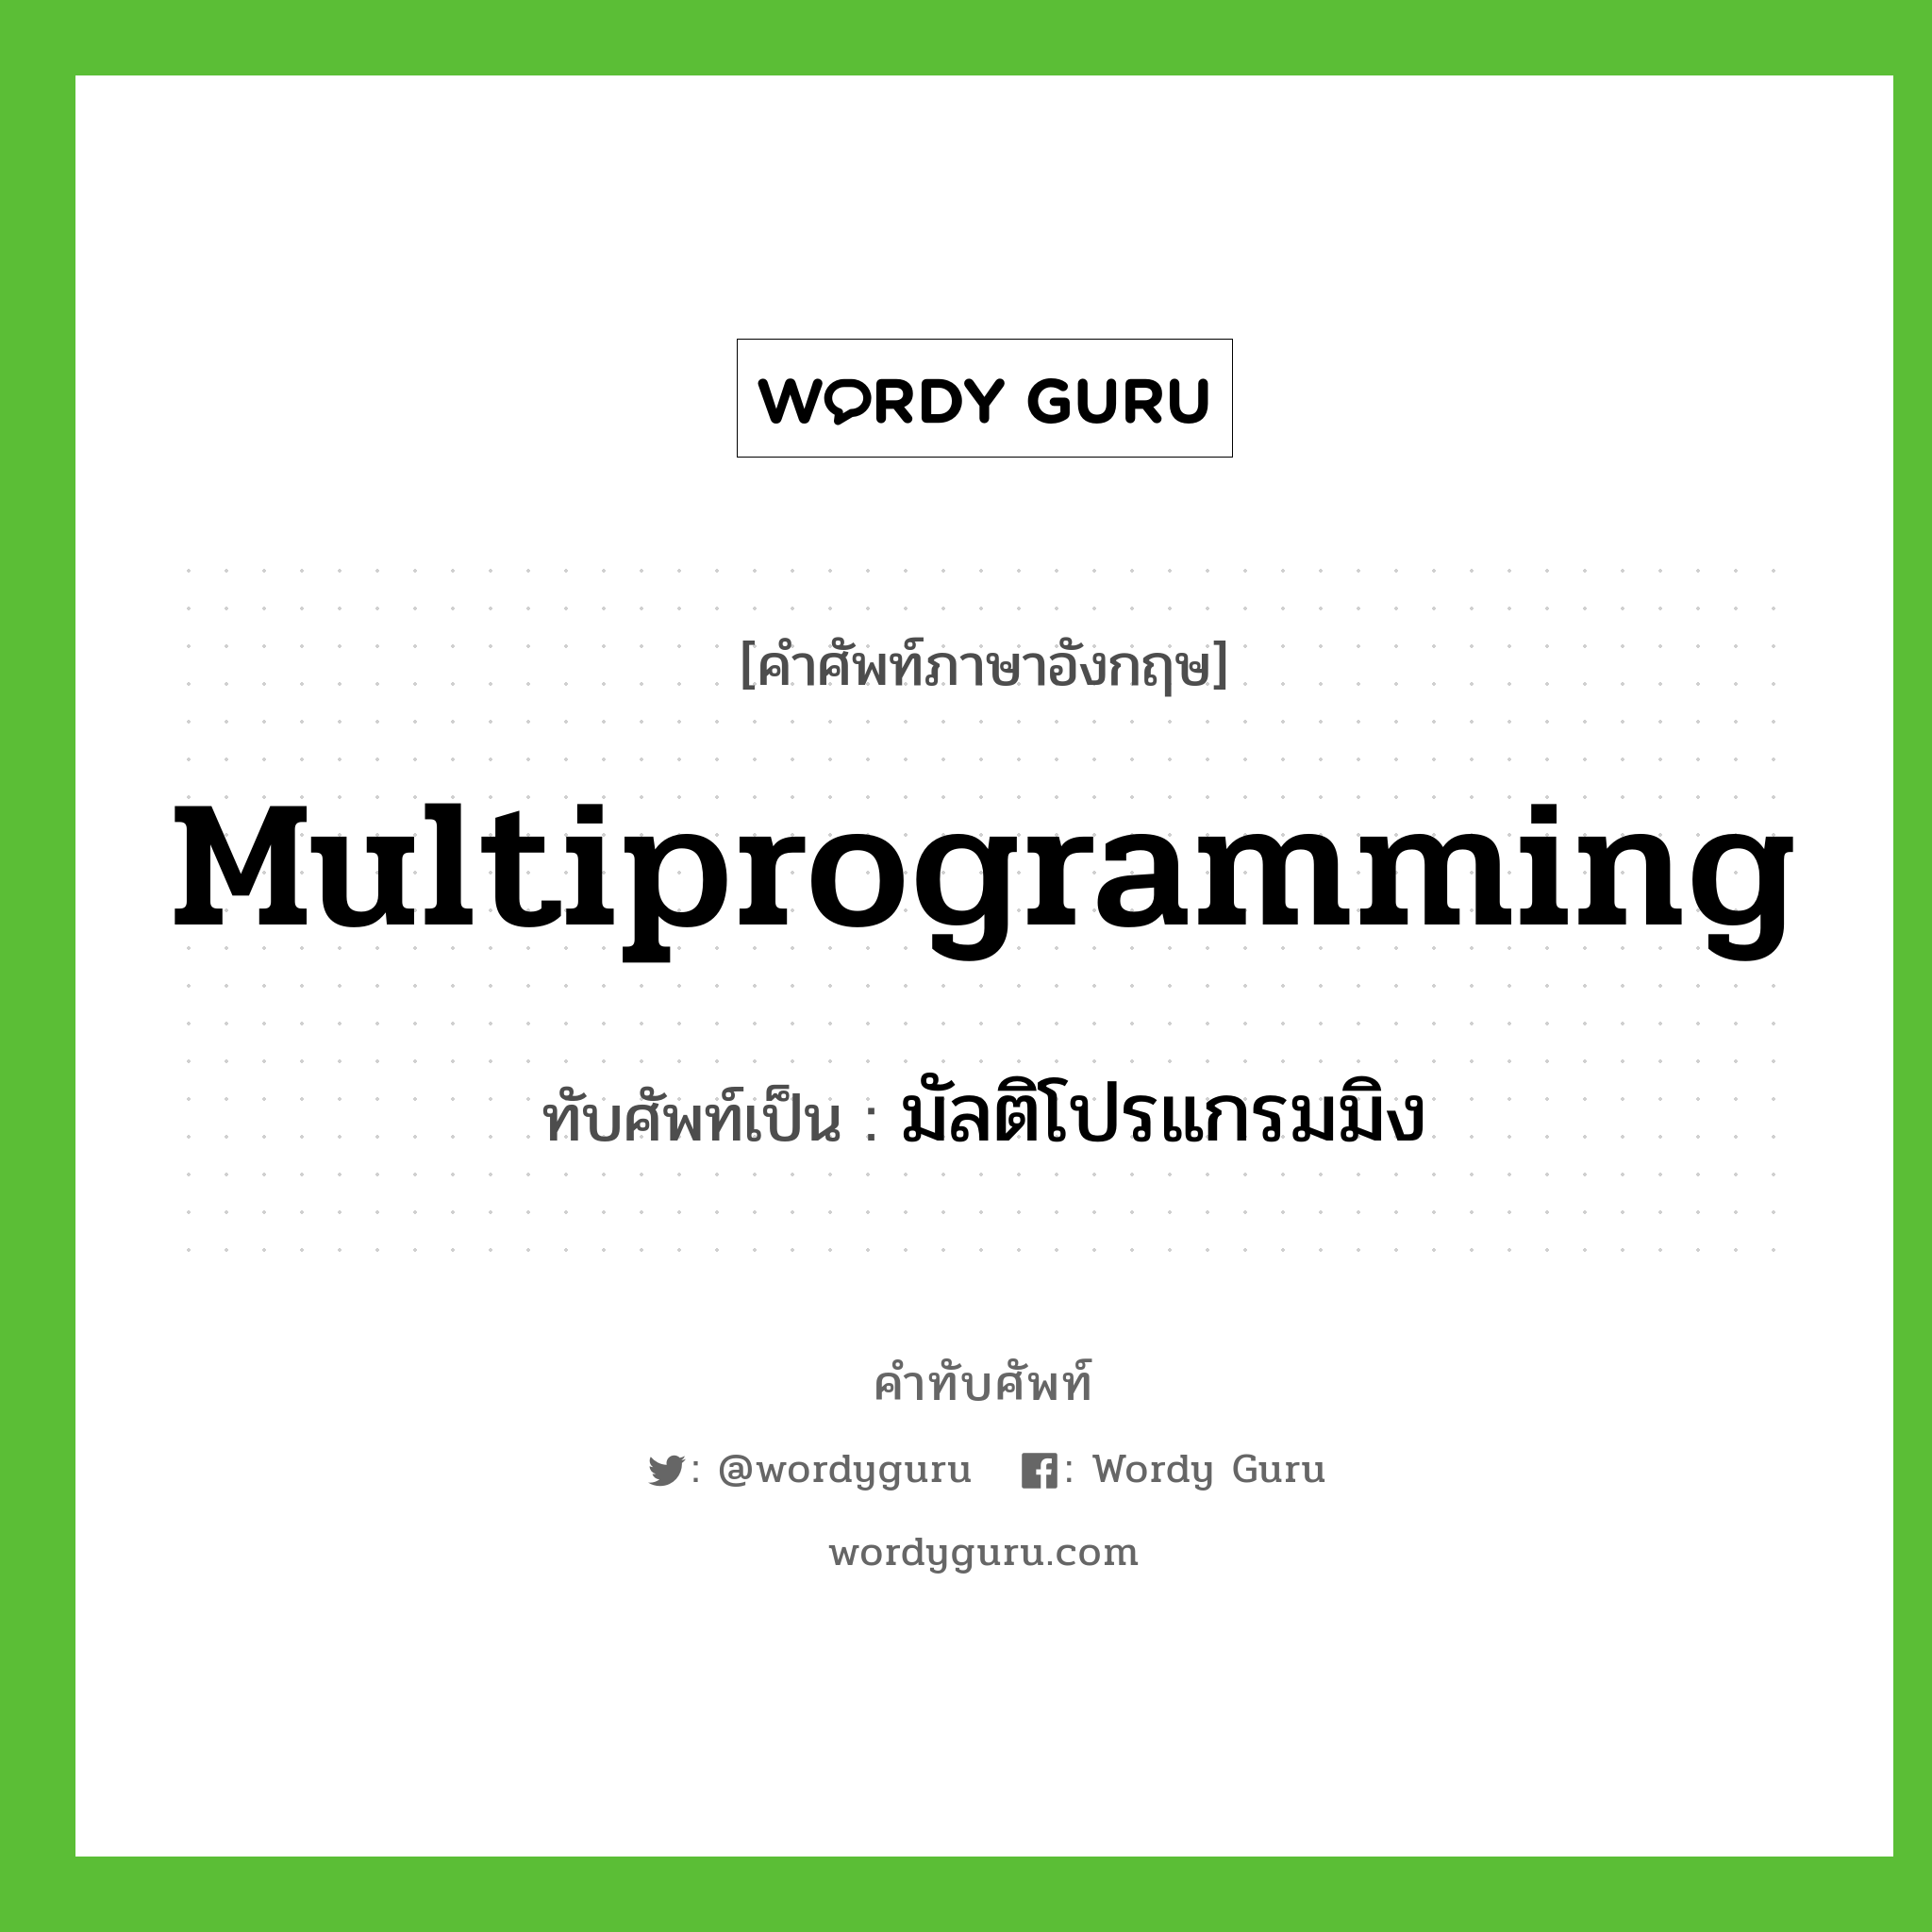 มัลติโปรแกรมมิง เขียนอย่างไร?, คำศัพท์ภาษาอังกฤษ มัลติโปรแกรมมิง ทับศัพท์เป็น multiprogramming